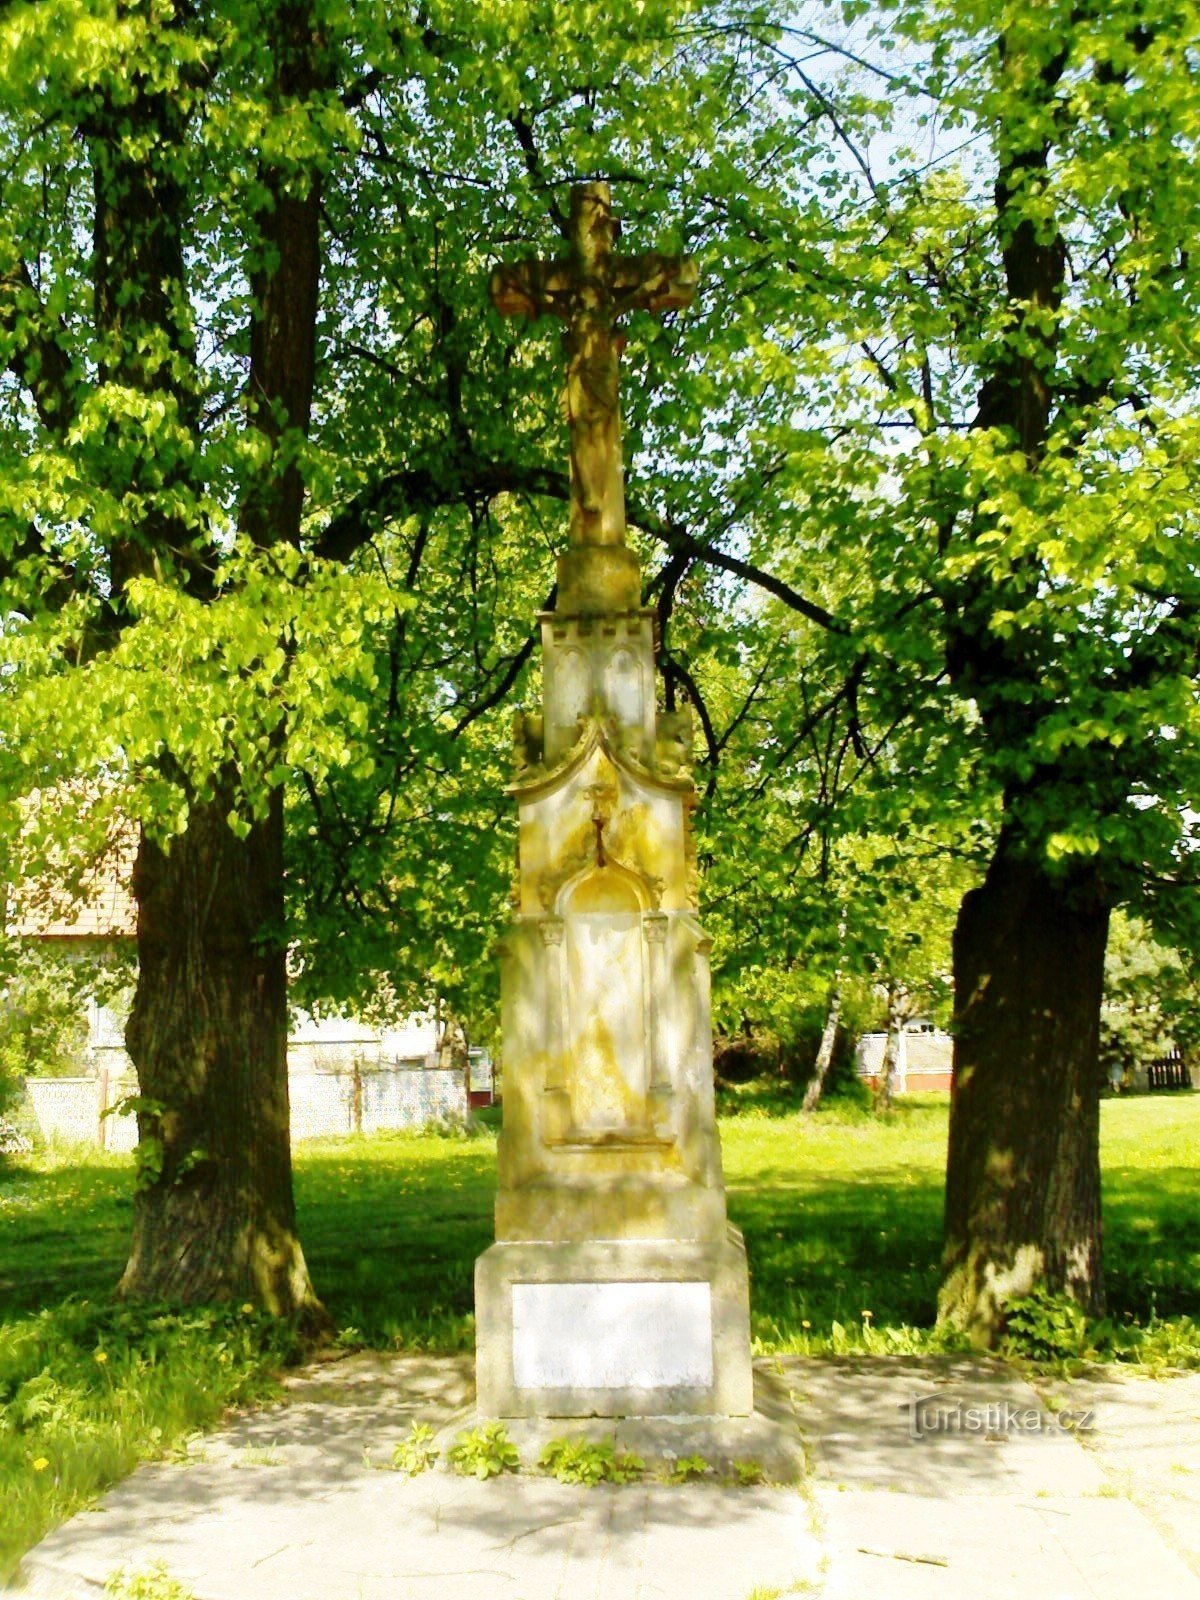 Staré Smrkovice - monumento della crocifissione